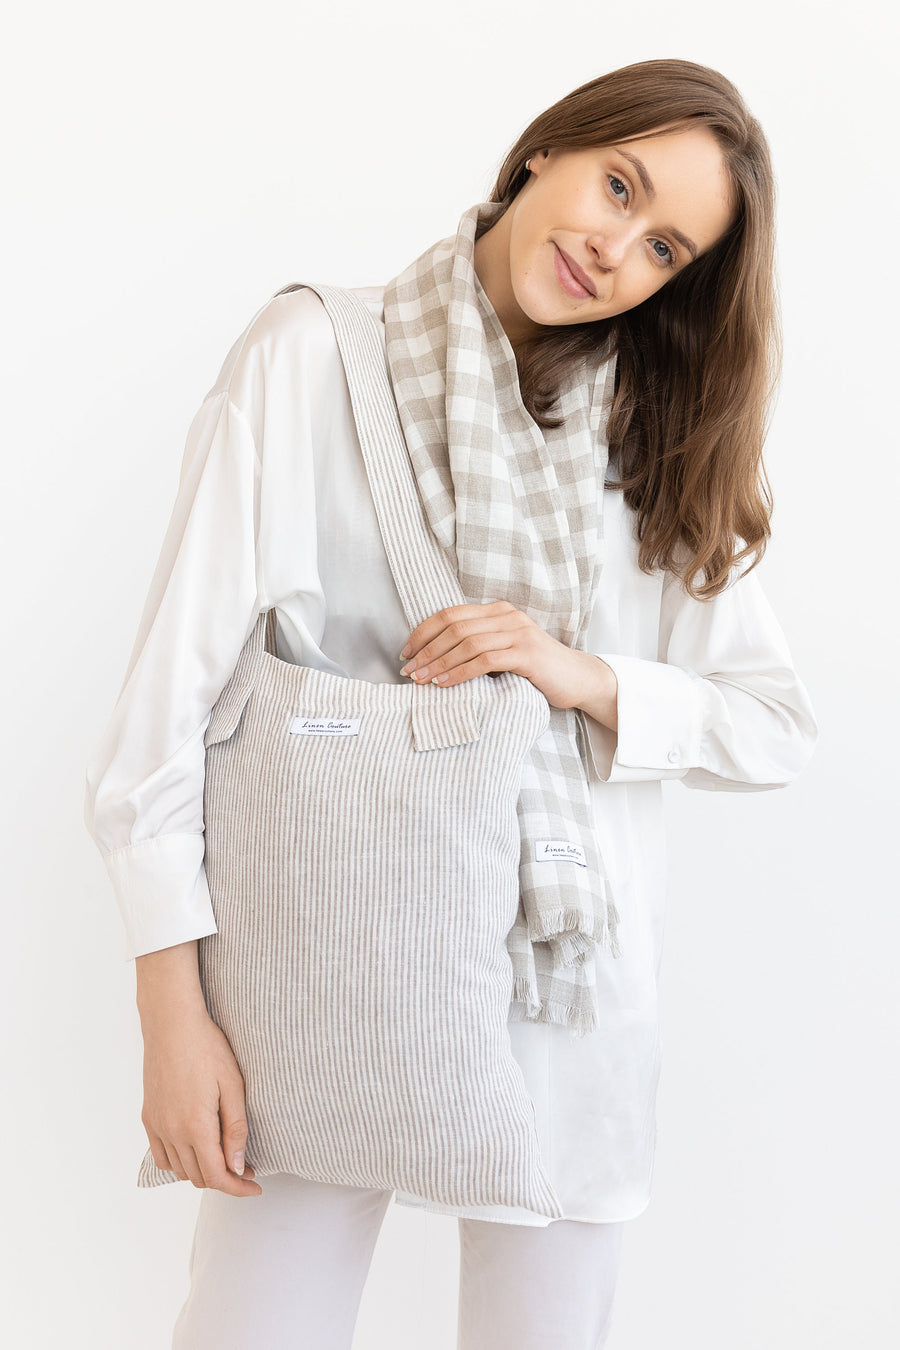 Striped Beige linen large tote bag - Linen Couture Boutique